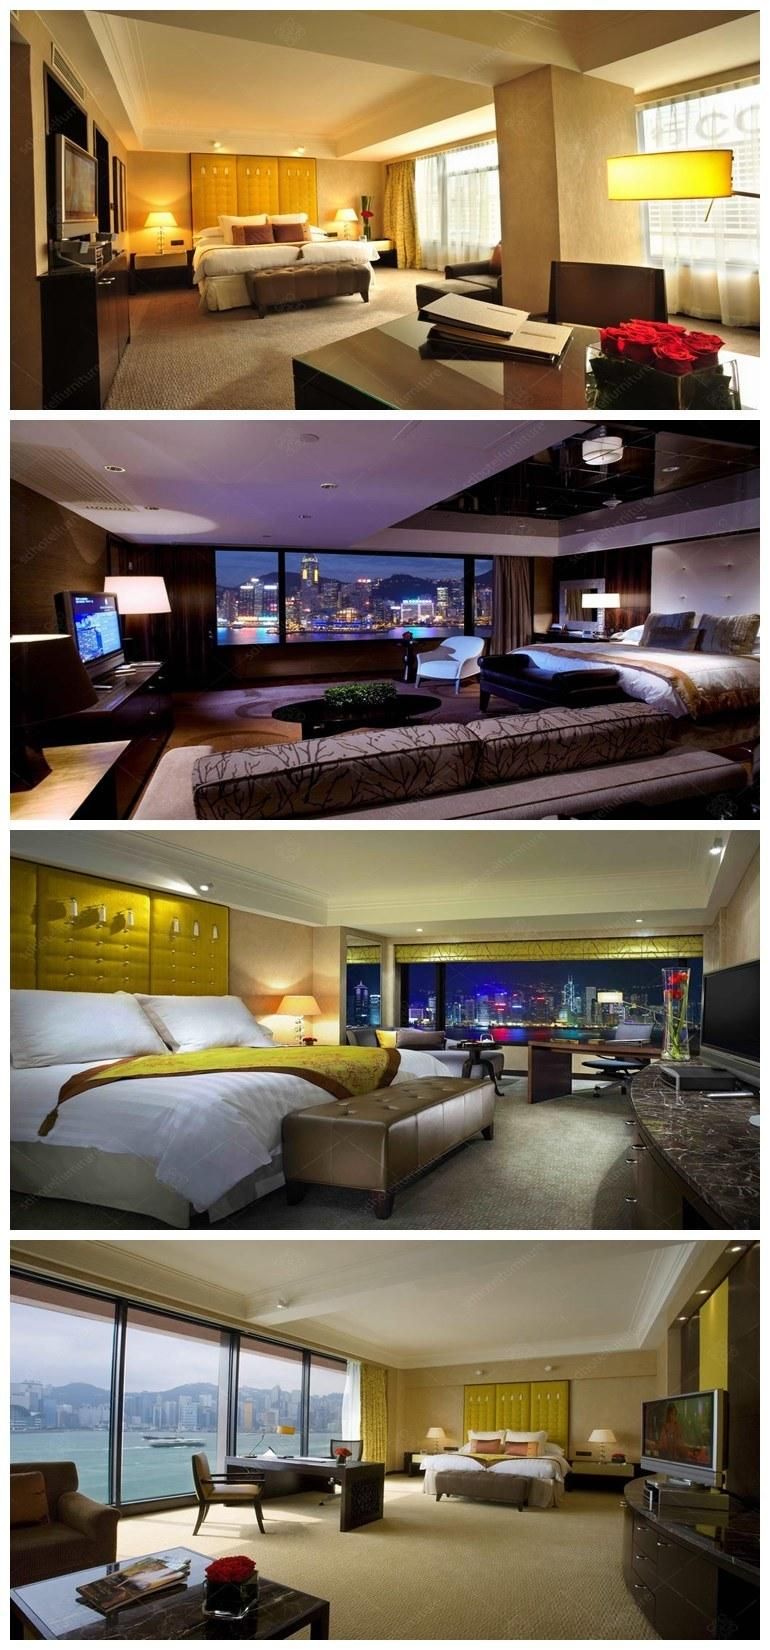 Luxury Royal Hotel Bedroom Furniture Bedroom Set for 5 Star